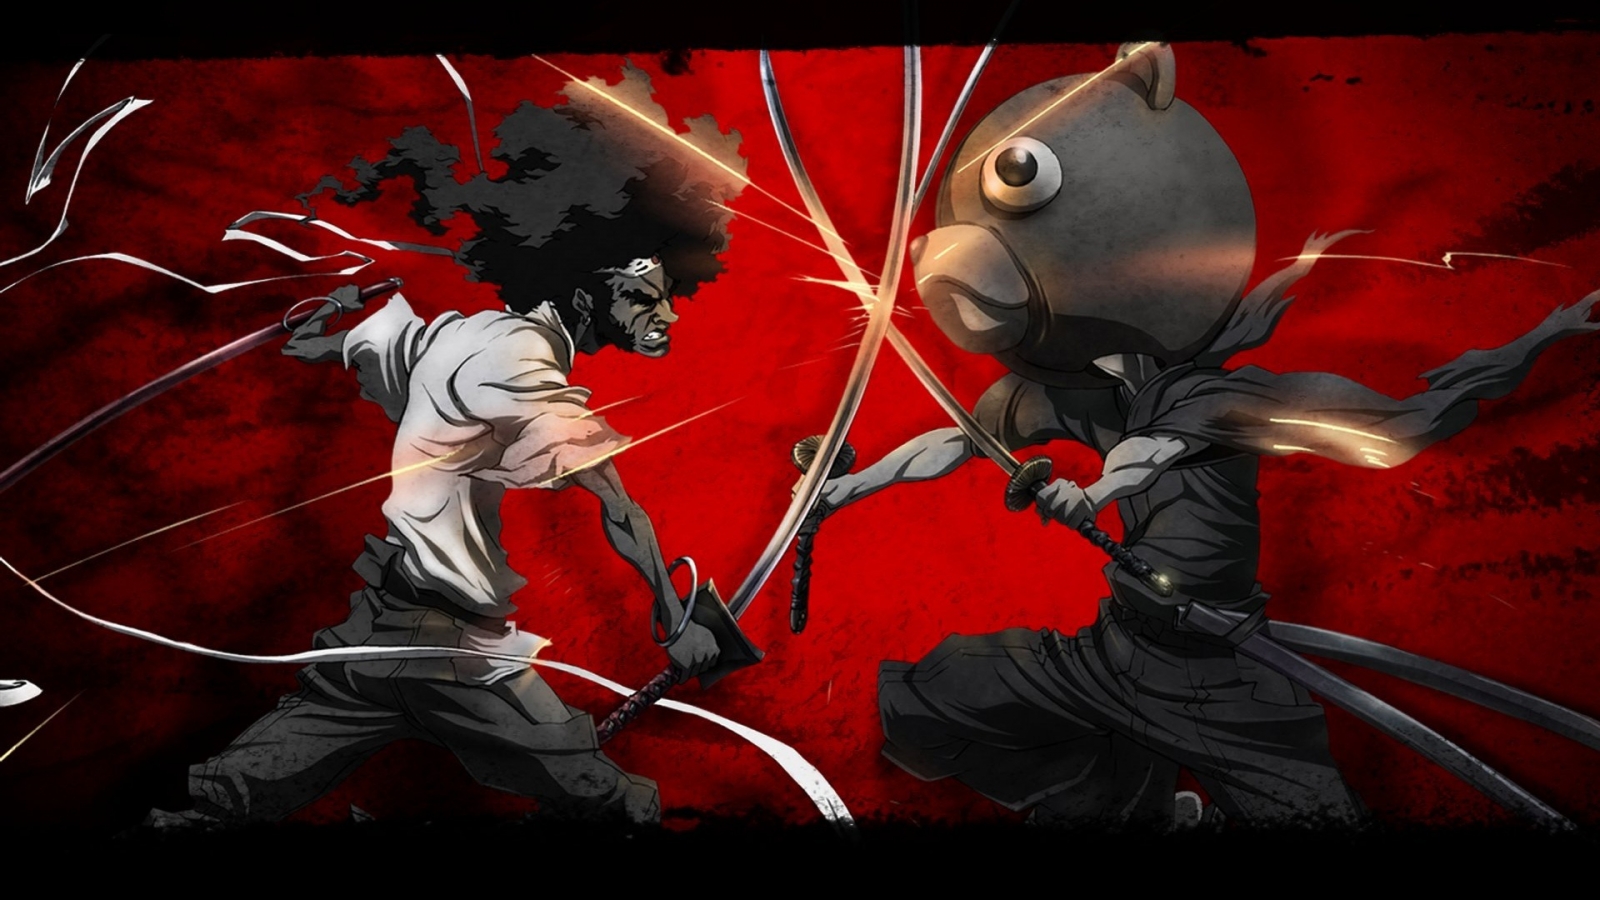 Afro Samurai vs Kuma for 1600 x 900 HDTV resolution